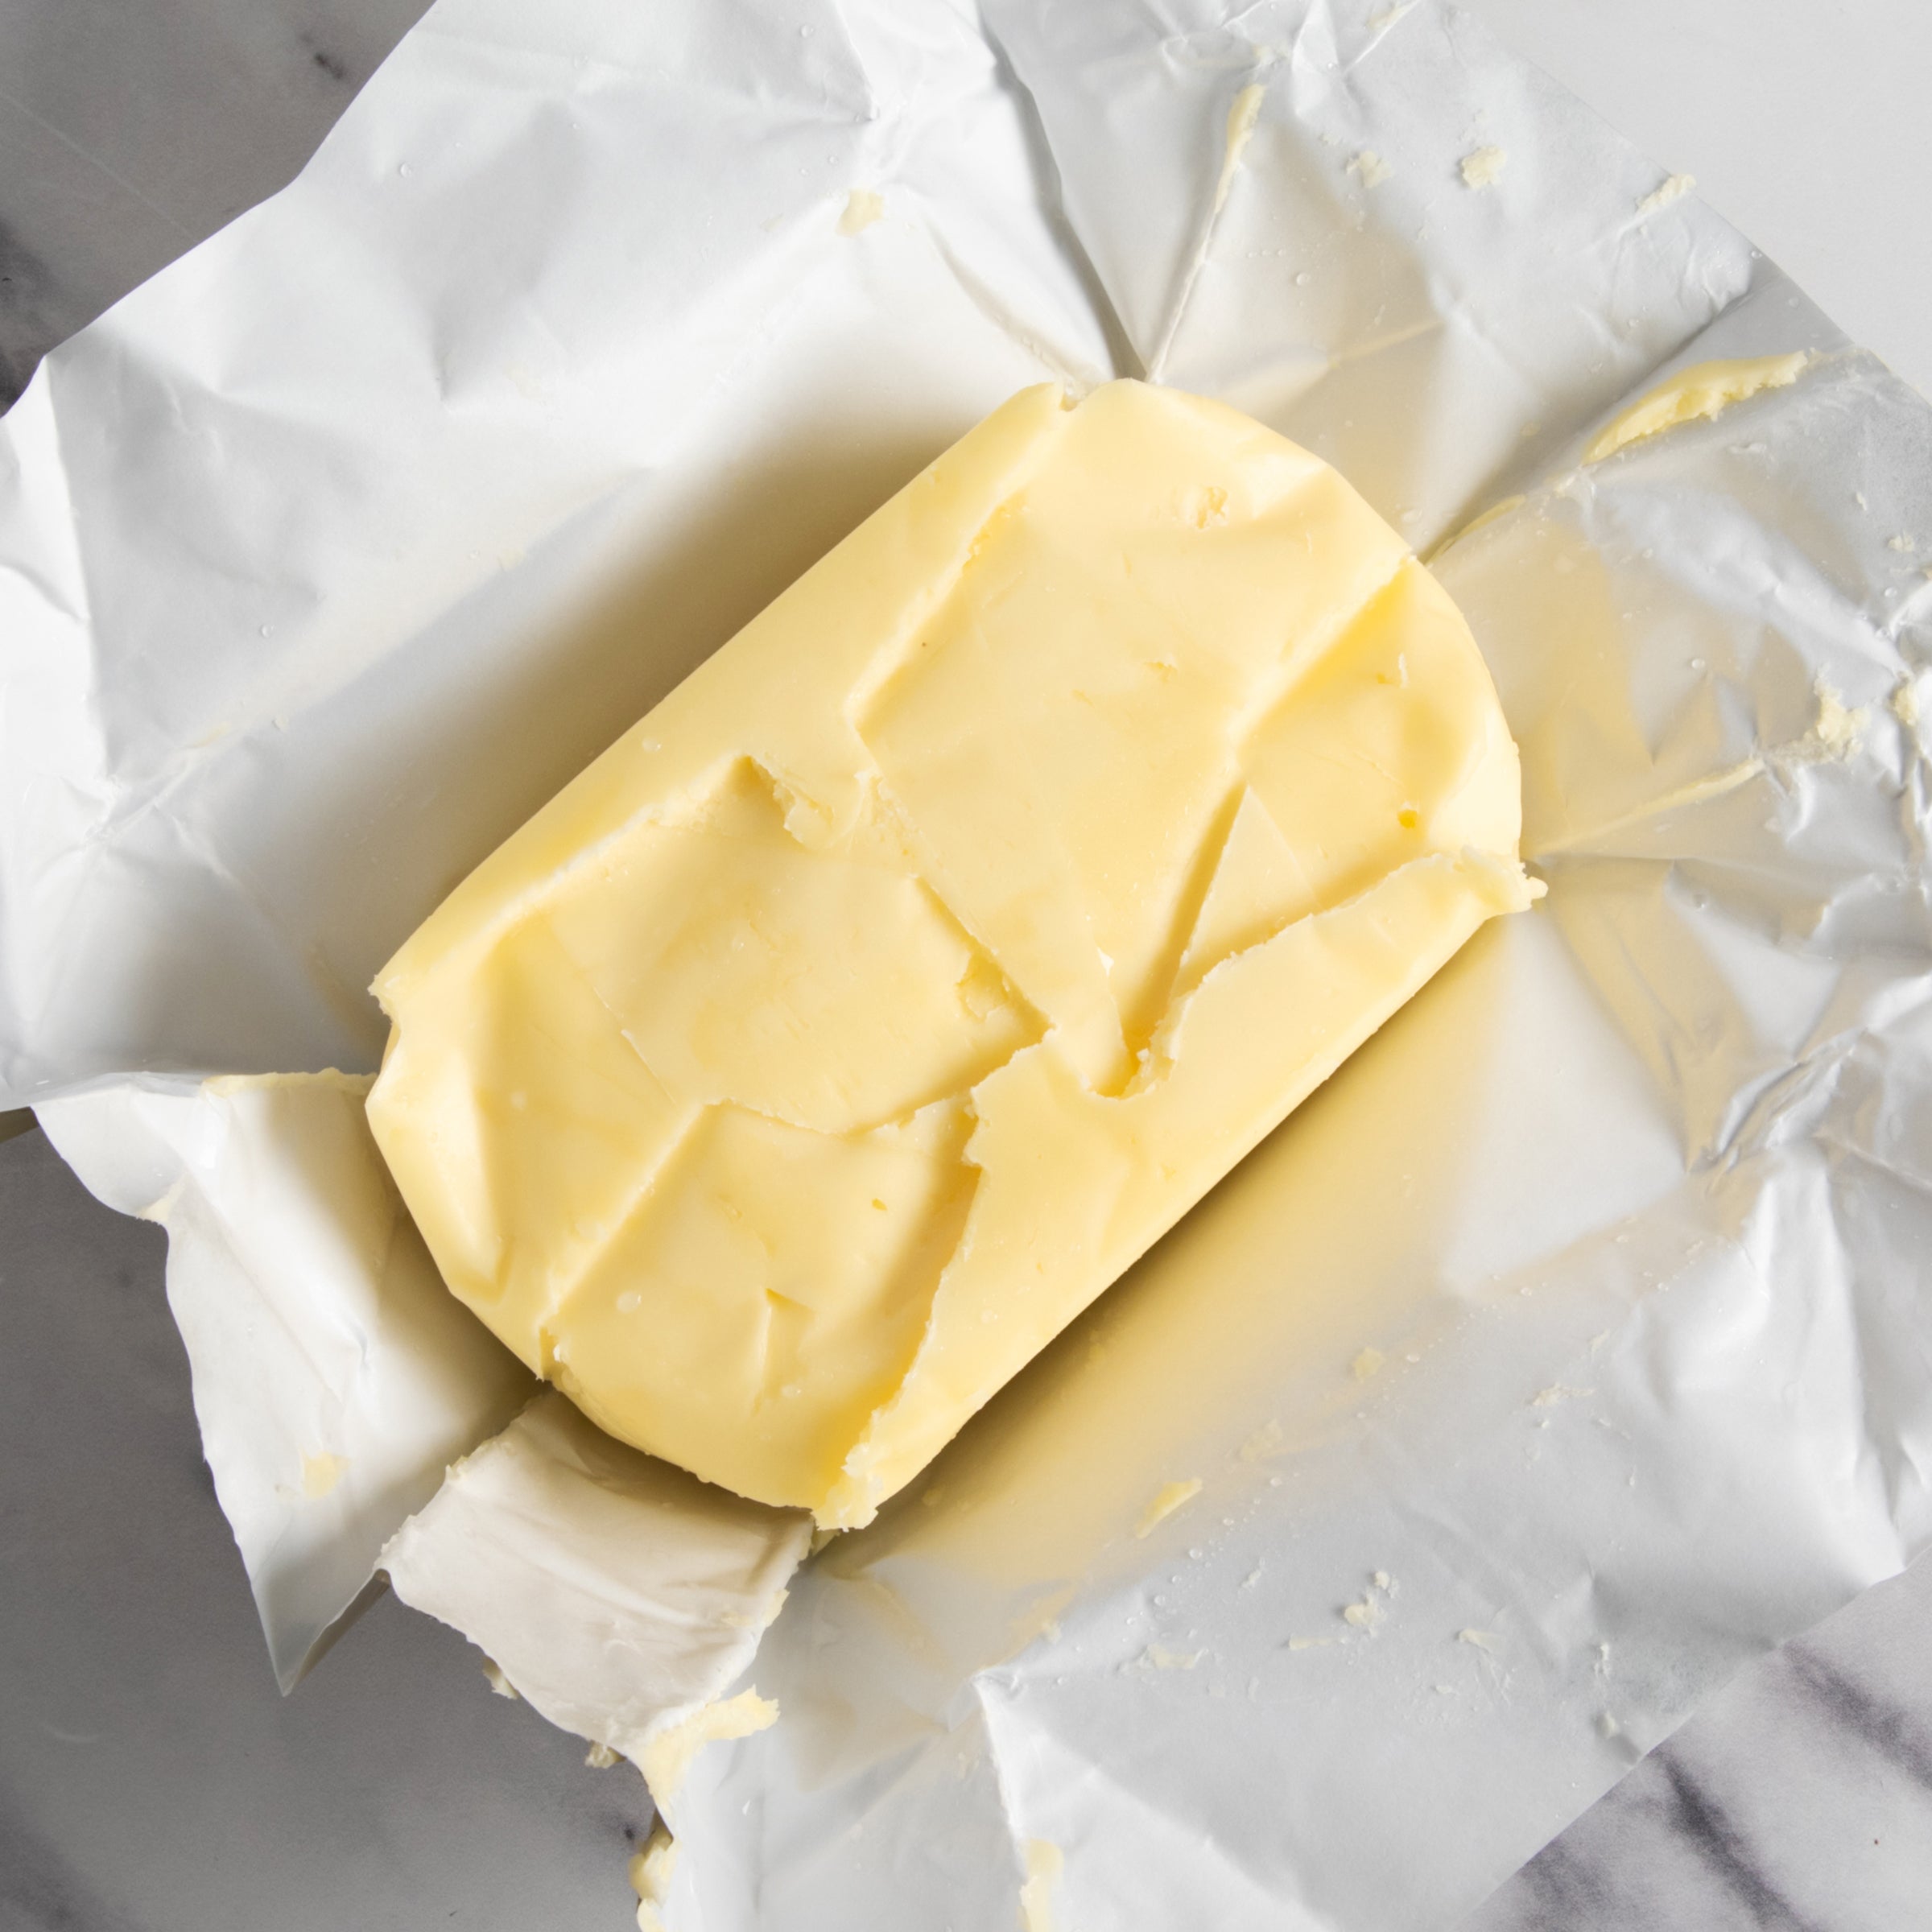 igourmet_a145_butters of the world_igourmet_butter & dairy